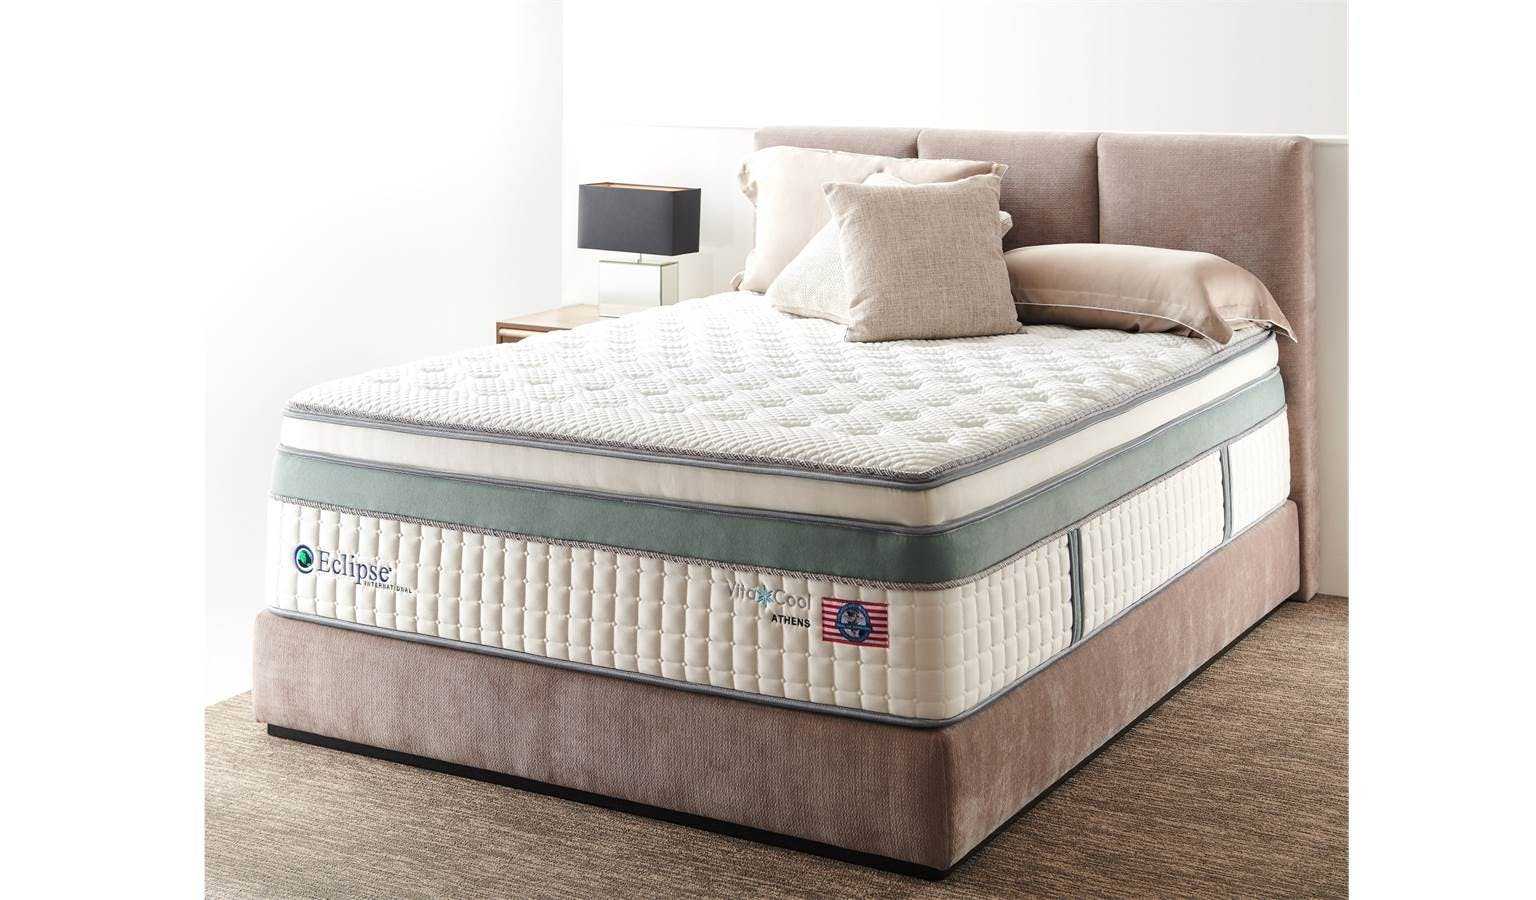 holmsbu spring mattress king size